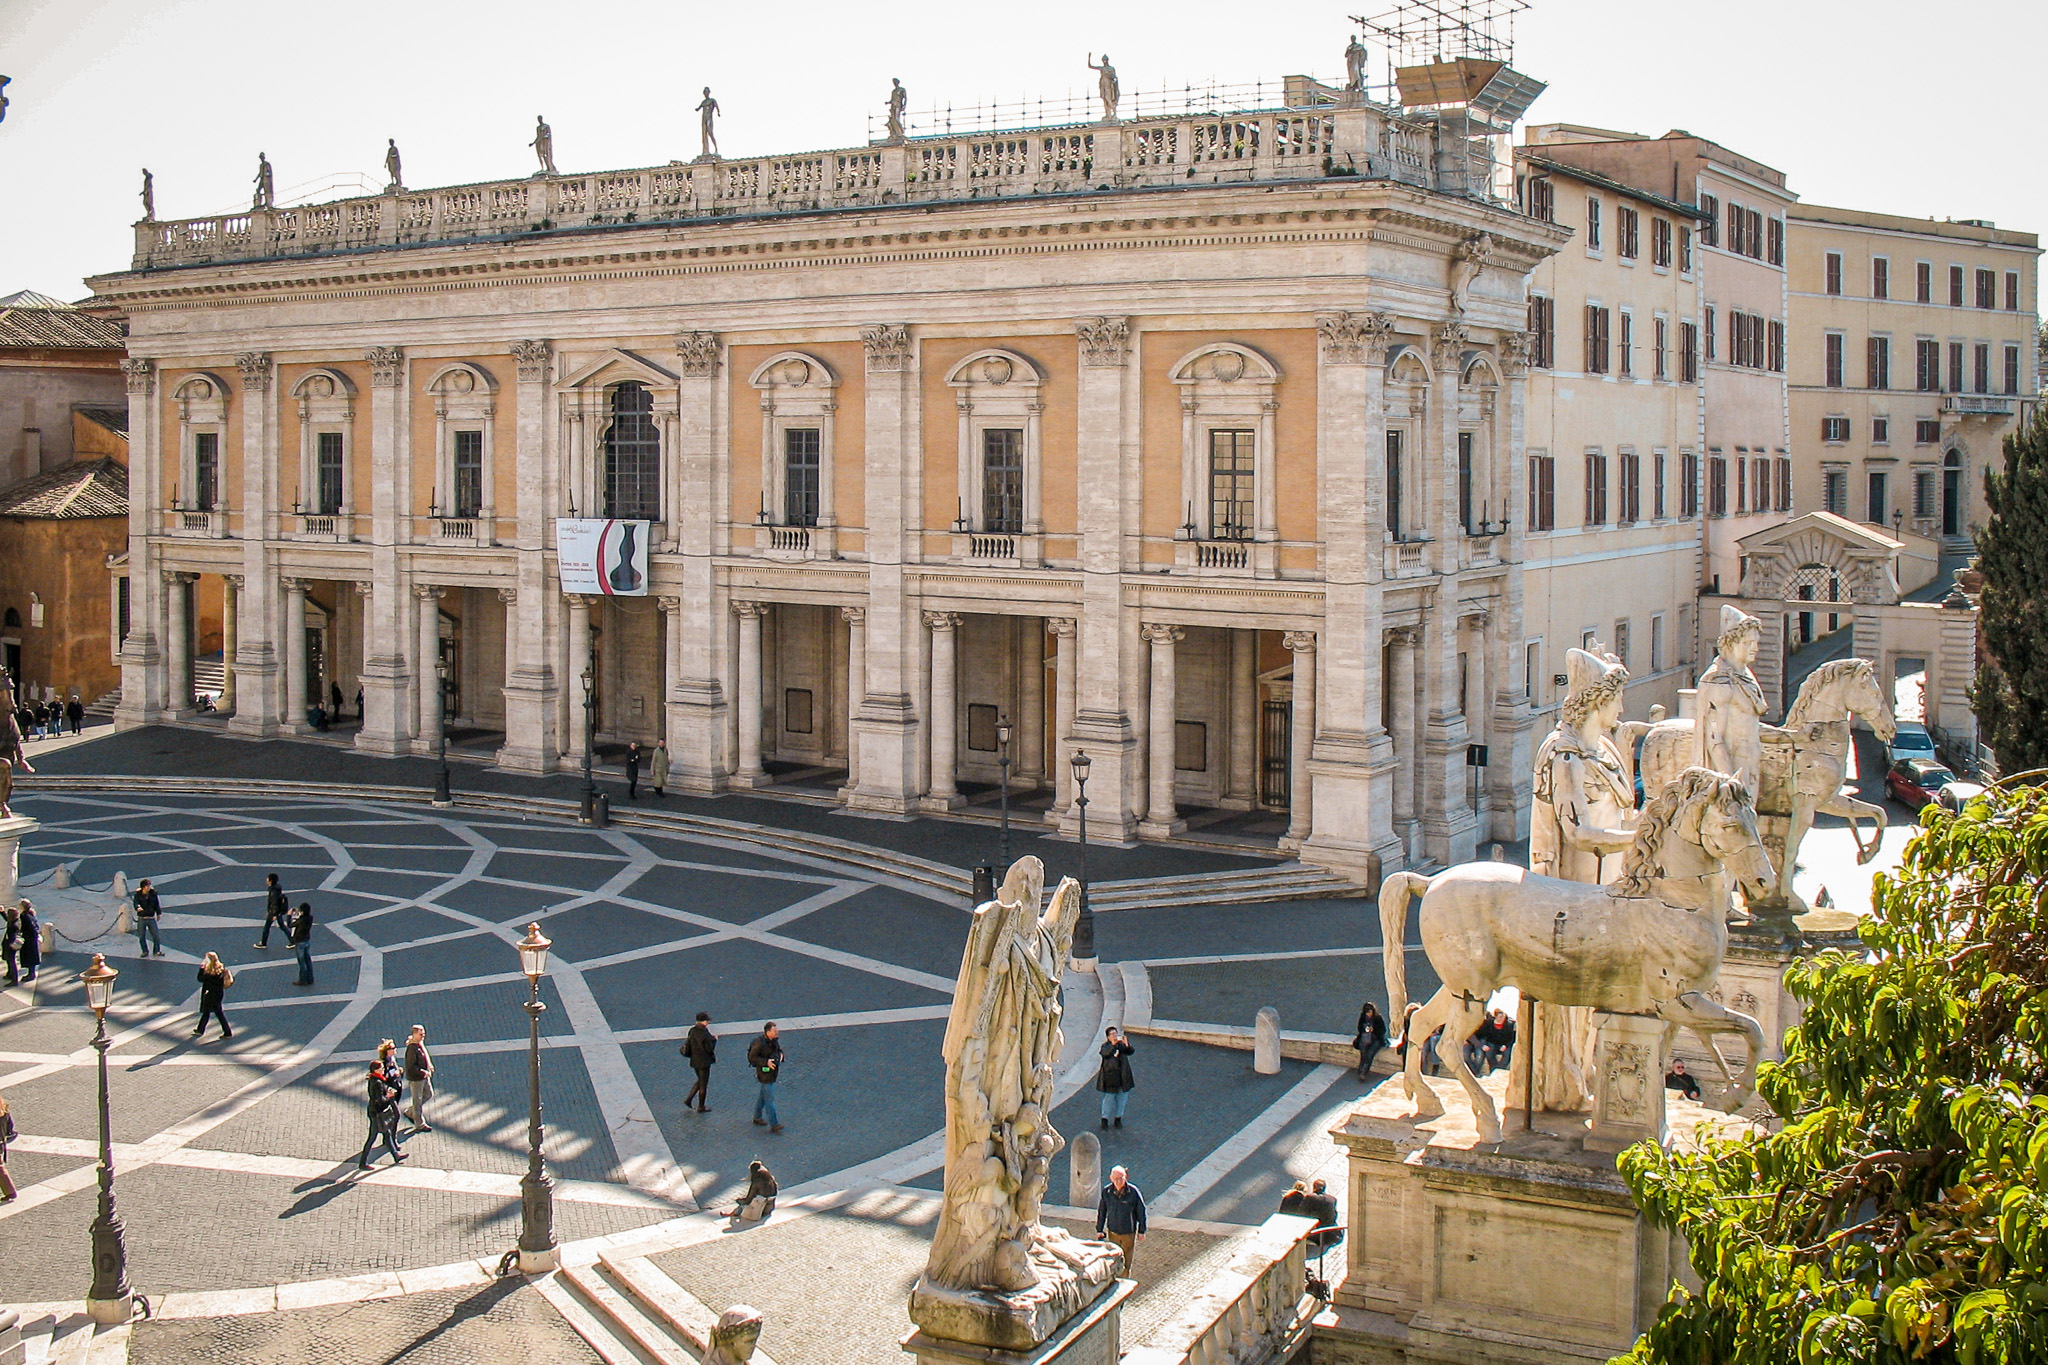 Michelangelo's Piazza del Campidoglio and Palazzo dei Conservatori building of the Capitoline Museums in Rome